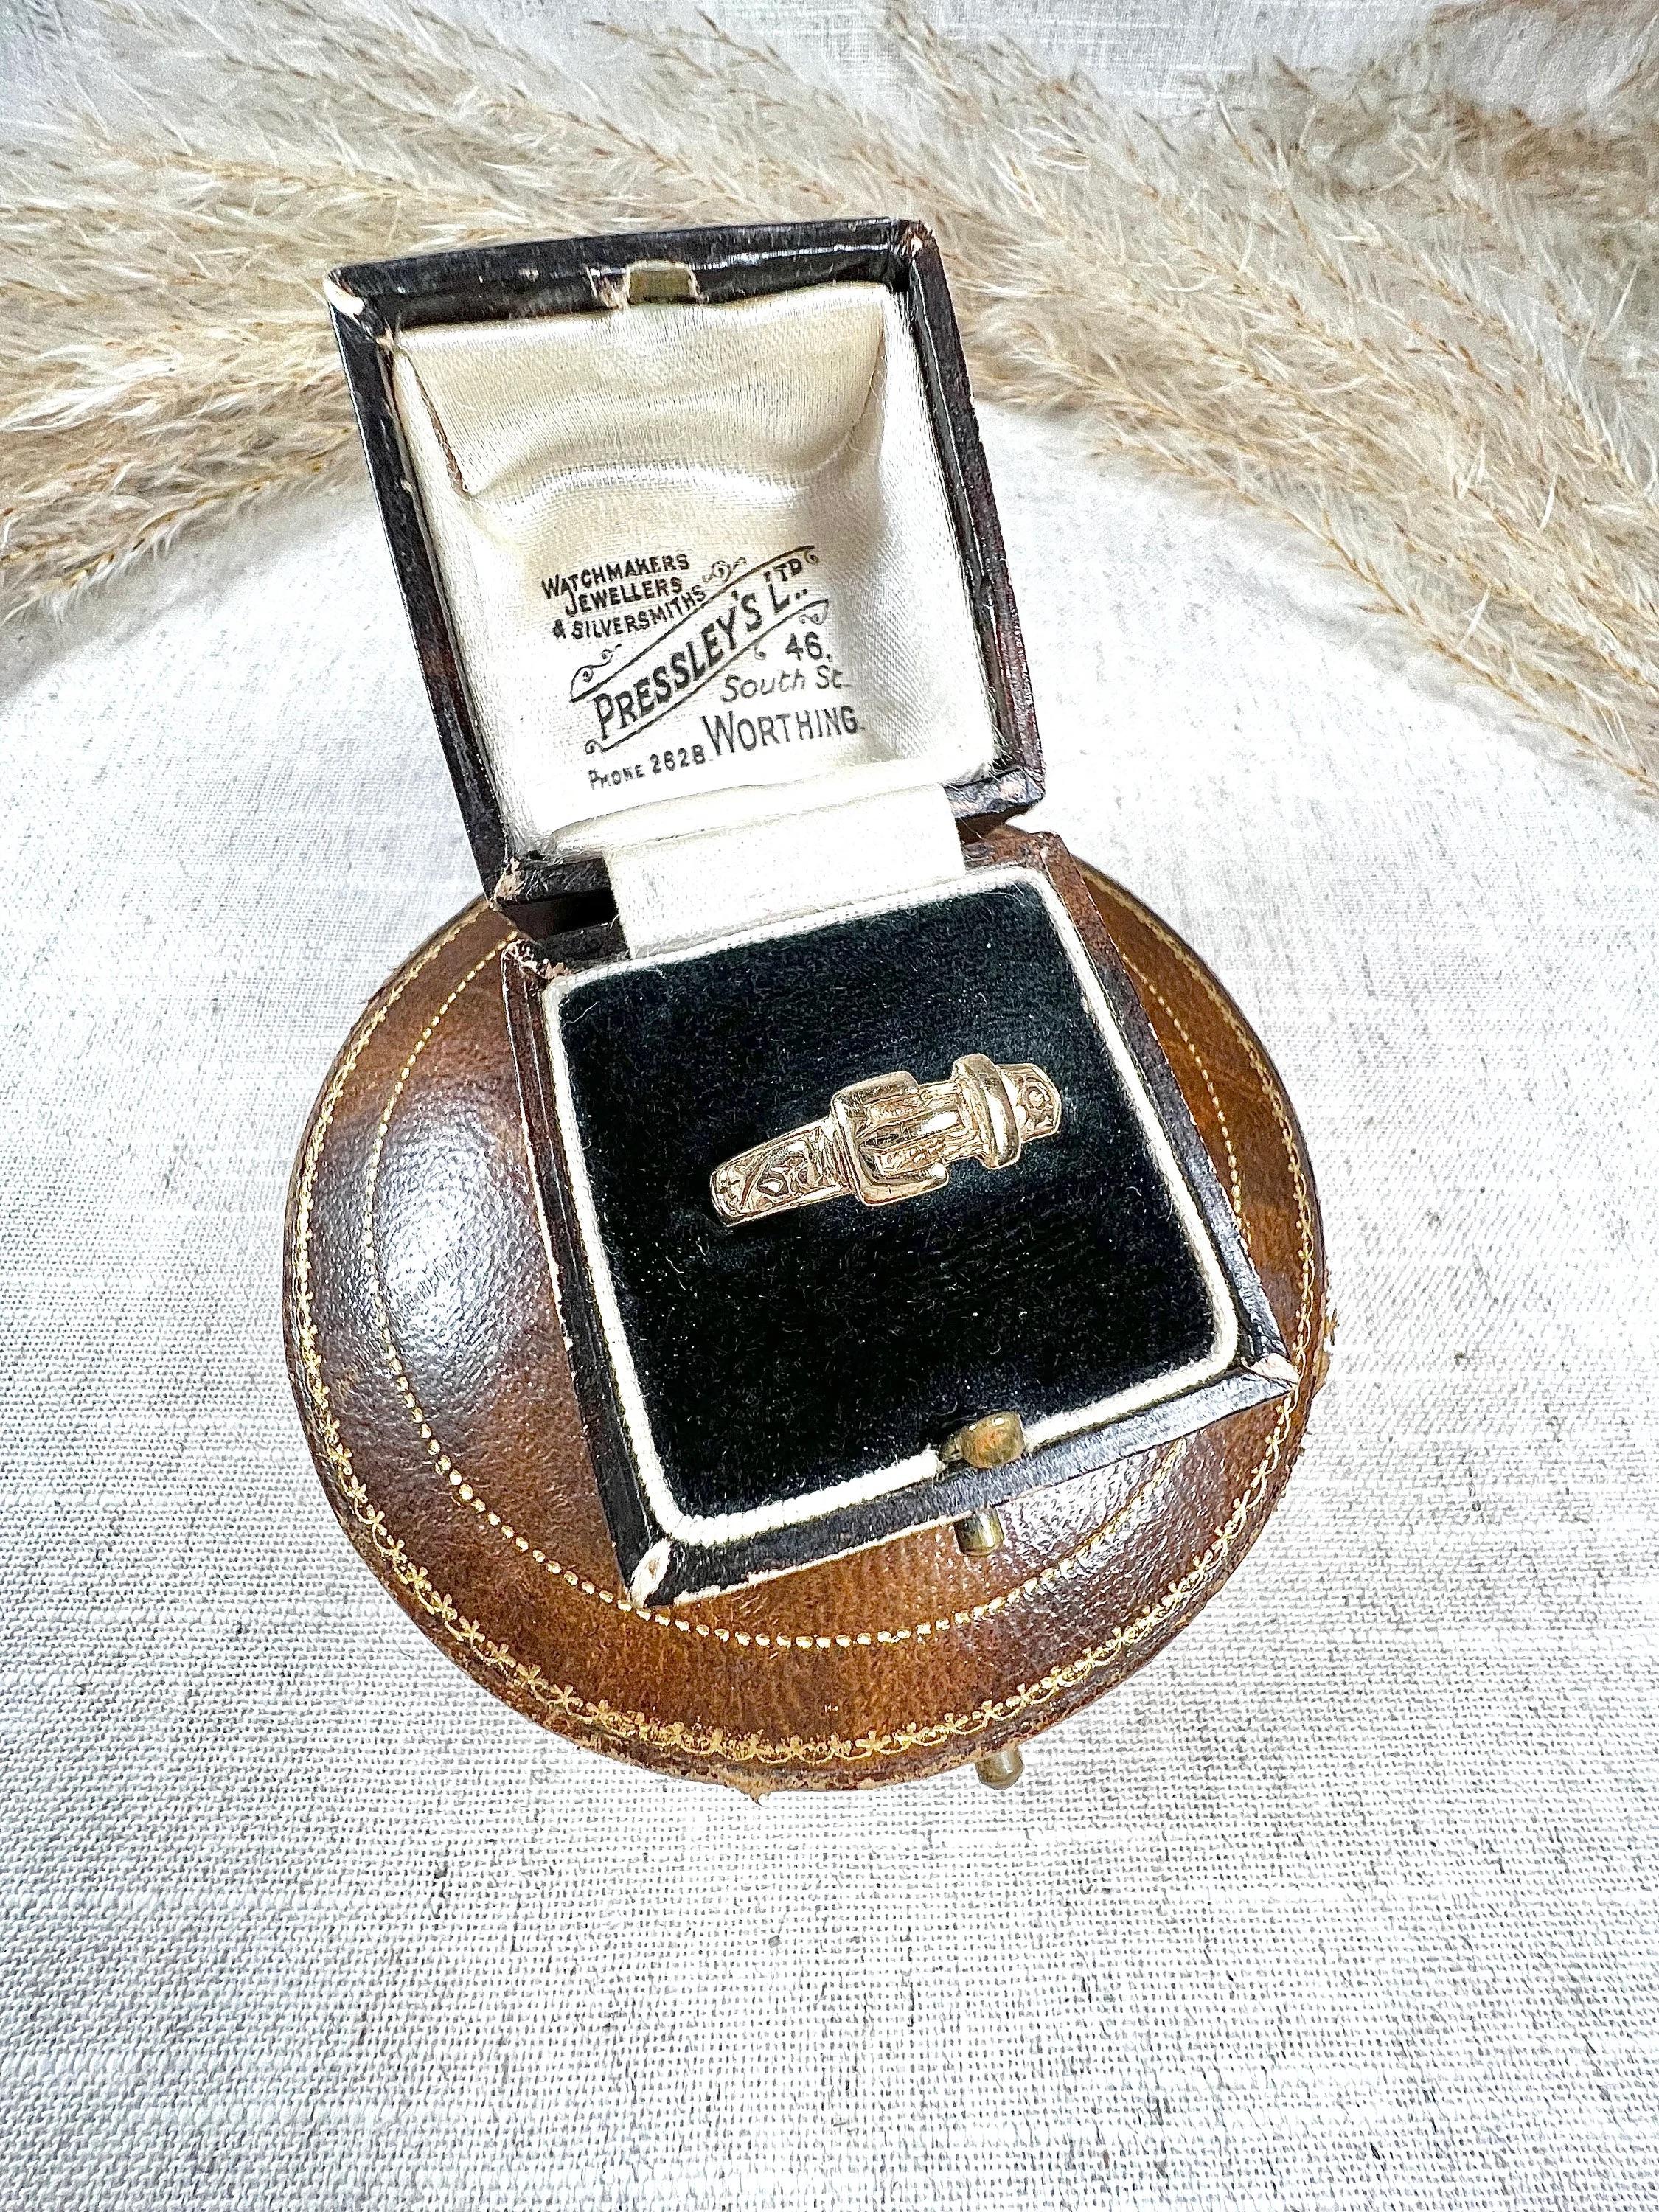 Vintage Schnalle Ring 

9ct Gelbgold gestempelt 

Gepunzt London 1980

Dieser exquisite Vintage-Ring ist aus 9-karätigem, blassem Gelbgold gefertigt und zeichnet sich durch eine aufwändige Goldgravur aus, die das gesamte Band umgibt. Das Design